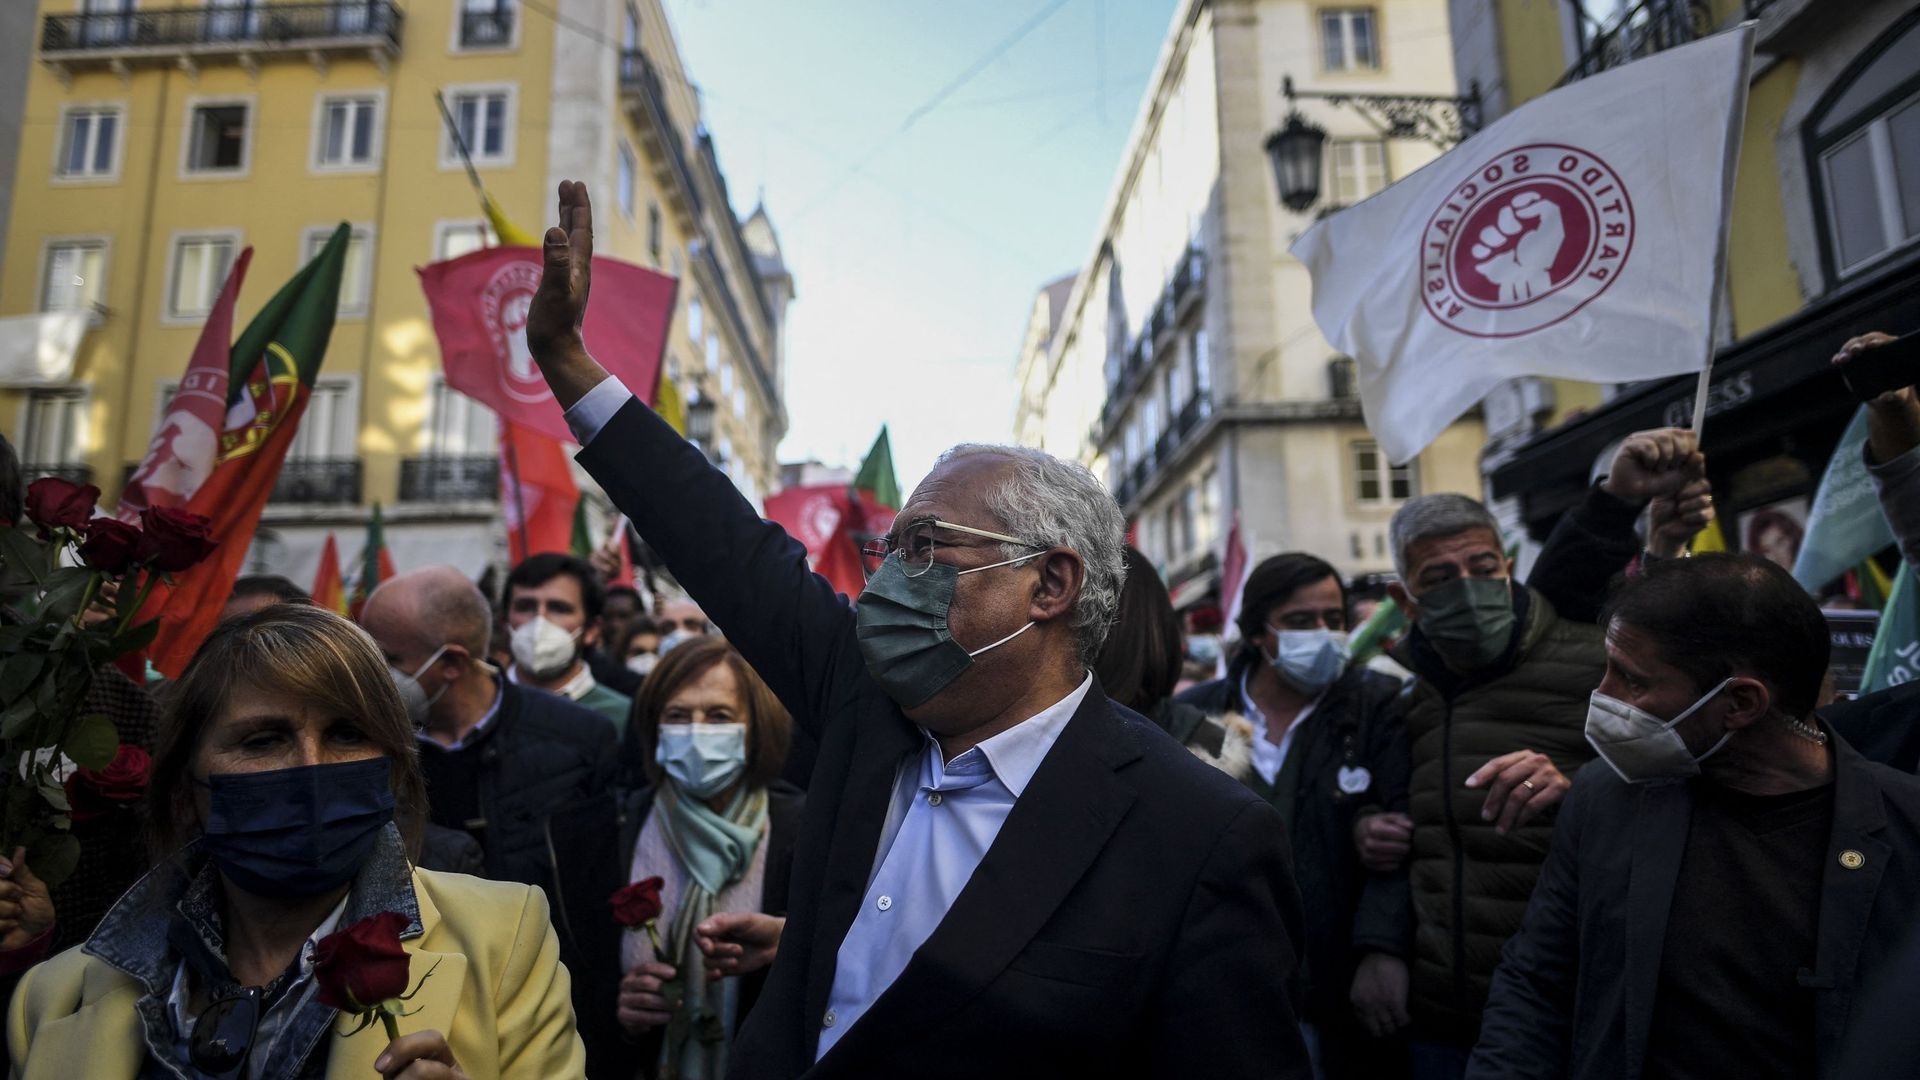 Le Premier ministre portugais sortant et leader du parti socialiste (PS) Antonio Costa lors d'un rassemblement de campagne dans la rue avant les élections générales du Portugal, à Lisbonne, le 28 janvier 2022